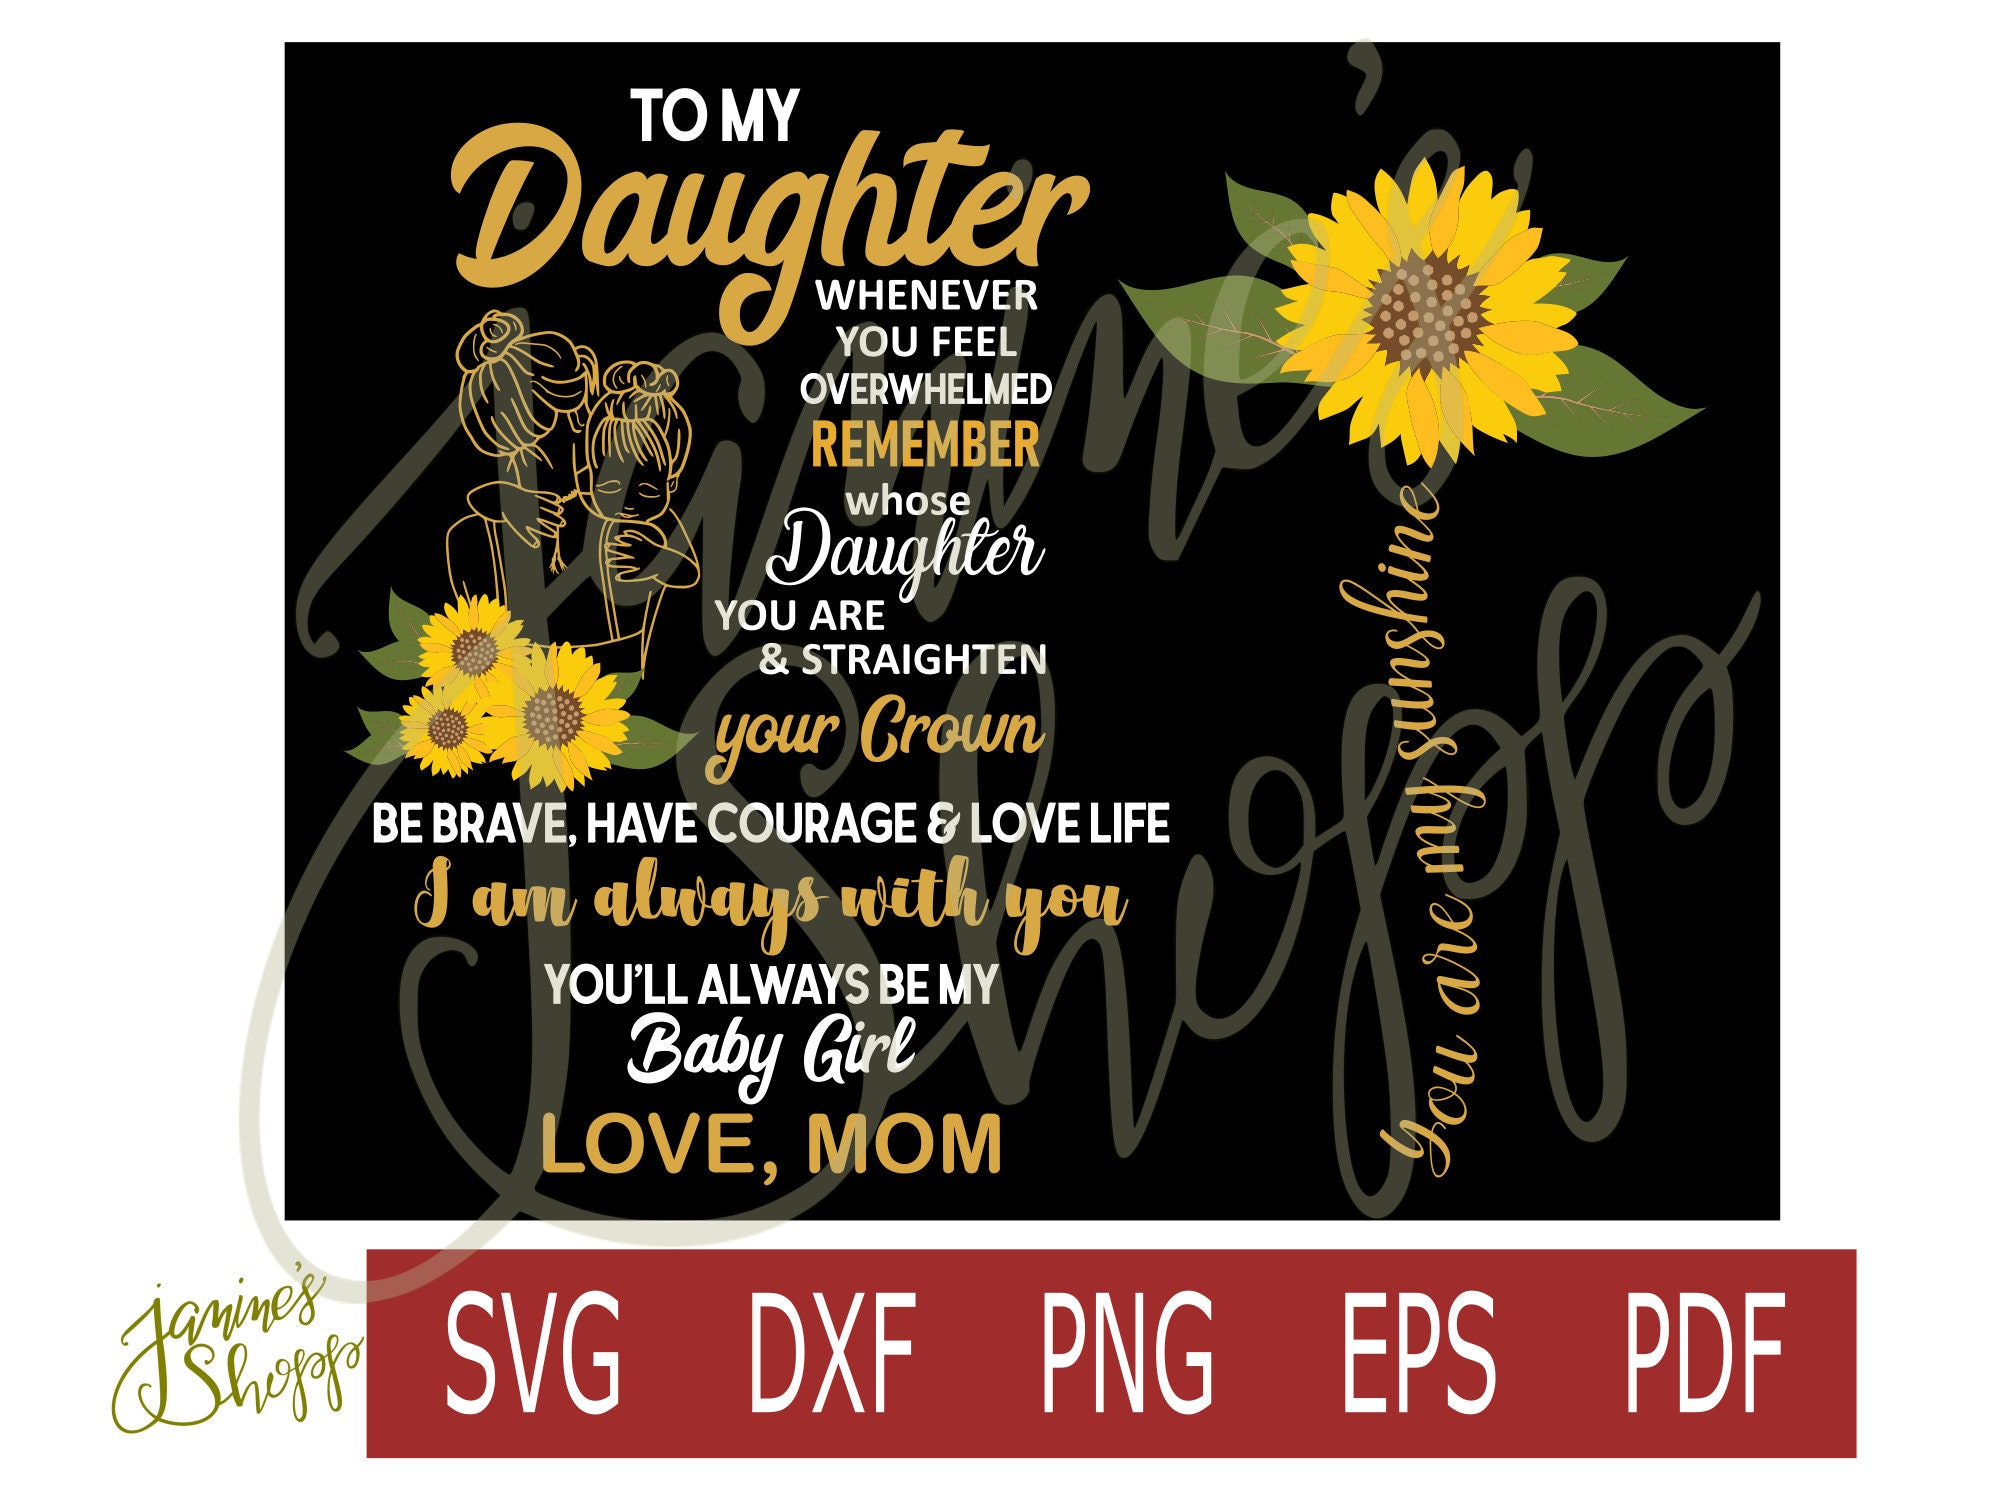 Svg Png đến Con gái tôi Sunflower BLACK BACKGROUND Dxf Eps - Etsy: Mẫu Svg Png đến Con gái tôi Sunflower BLACK BACKGROUND Dxf Eps trên Etsy là một tác phẩm nghệ thuật tinh tế và độc đáo tạo ra bởi các nghệ sĩ hàng đầu. Với định dạng tập tin đa dạng, bạn có thể dễ dàng tải xuống và sử dụng mẫu này trên nhiều hình thức sáng tạo, từ tạo nhãn dán cho túi xách, áo thun, tất cả đều thật tốt.